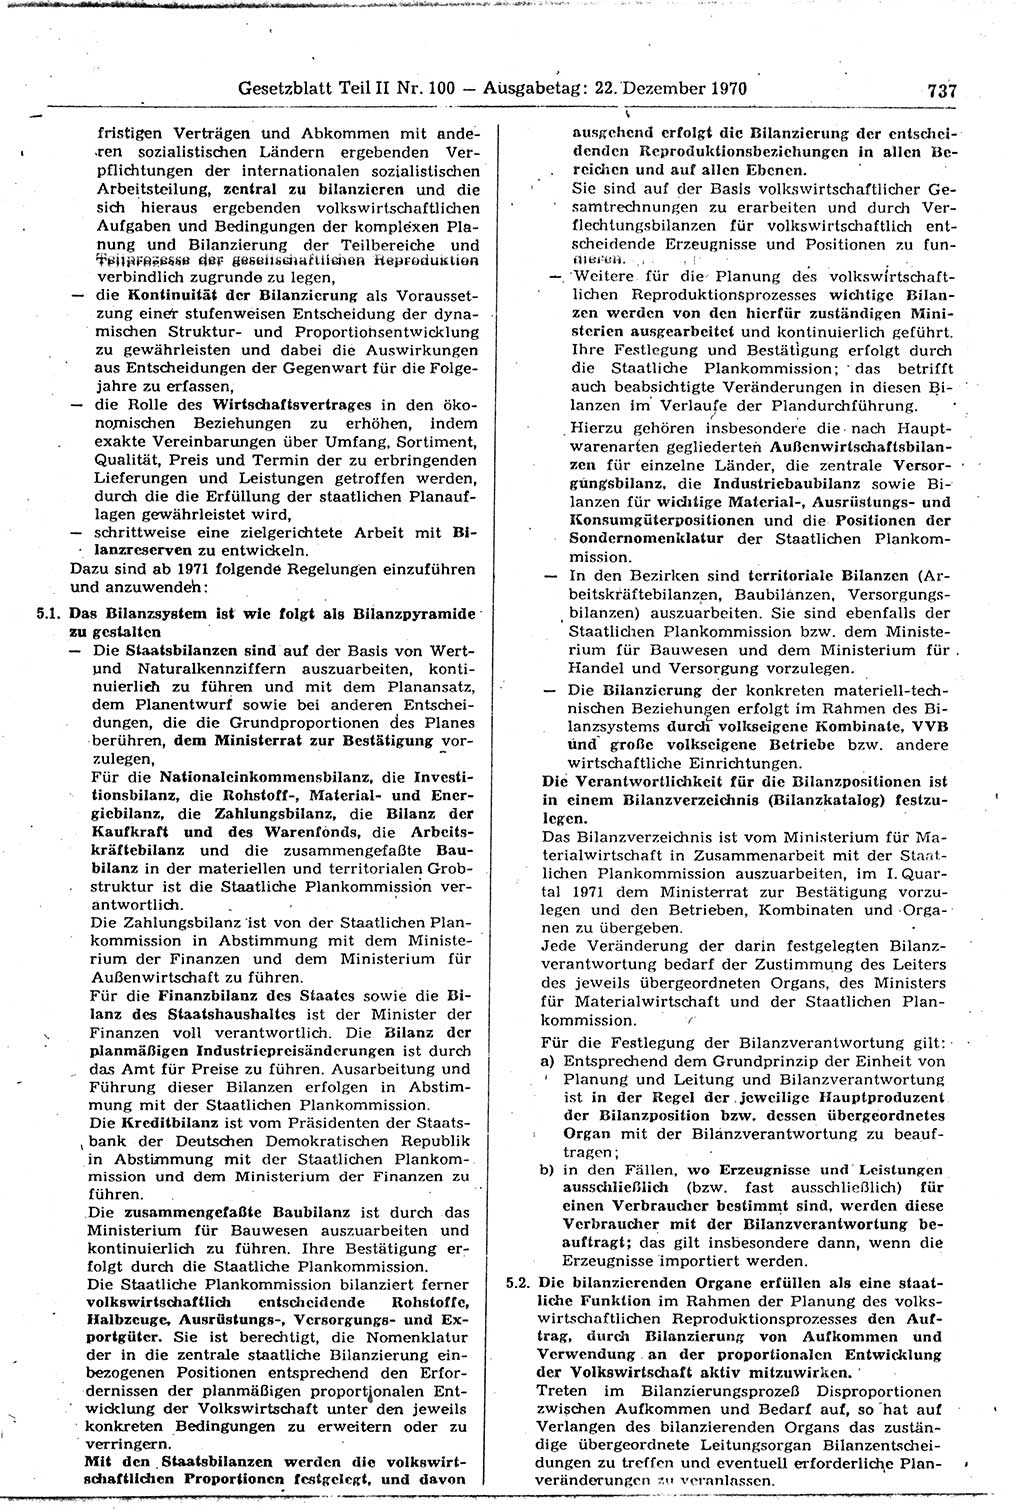 Gesetzblatt (GBl.) der Deutschen Demokratischen Republik (DDR) Teil ⅠⅠ 1970, Seite 737 (GBl. DDR ⅠⅠ 1970, S. 737)